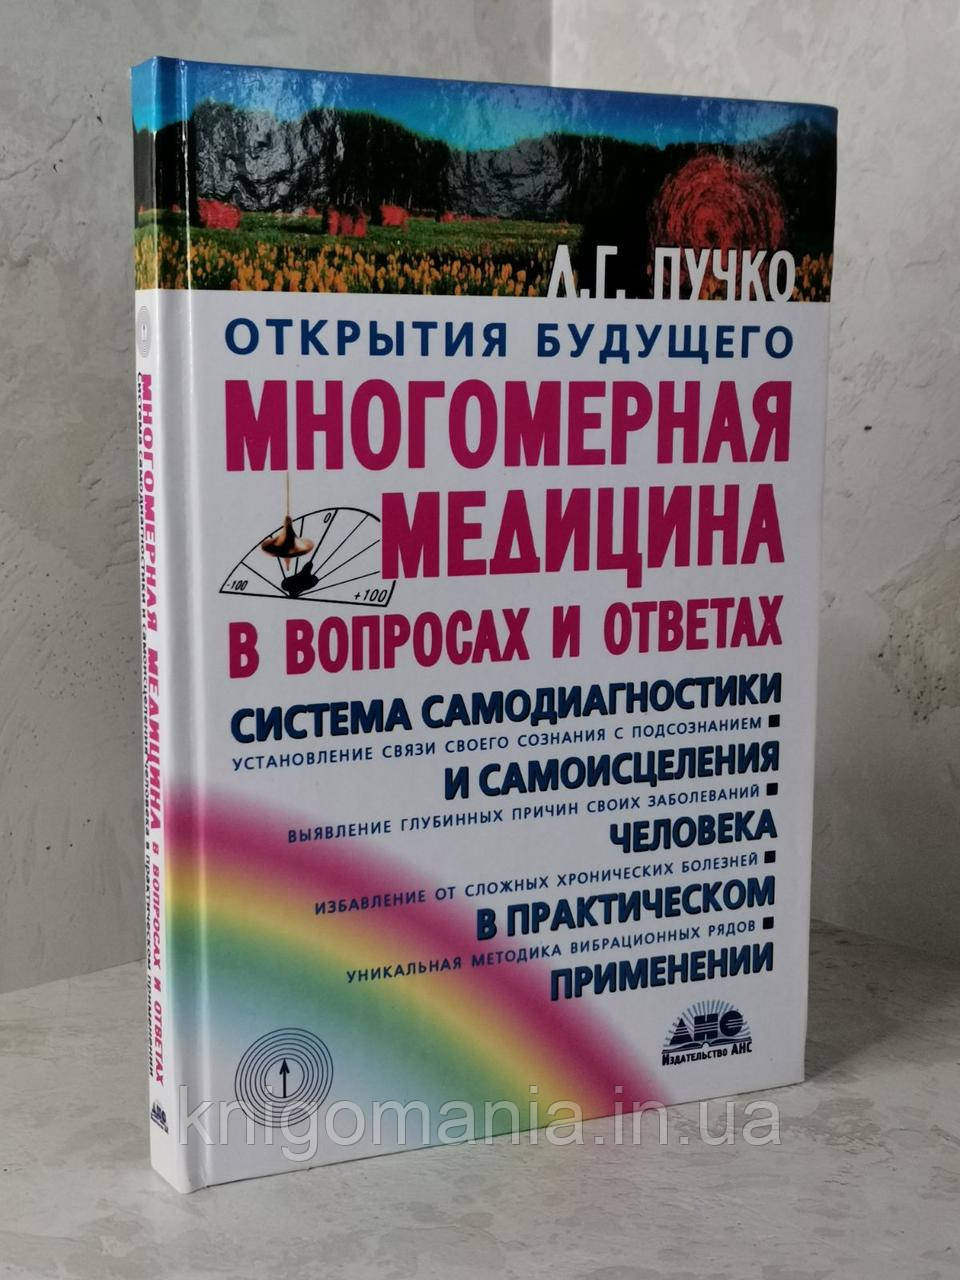 Книга "Многомерная медицина в вопросах и ответах" Пучко Л.Г.